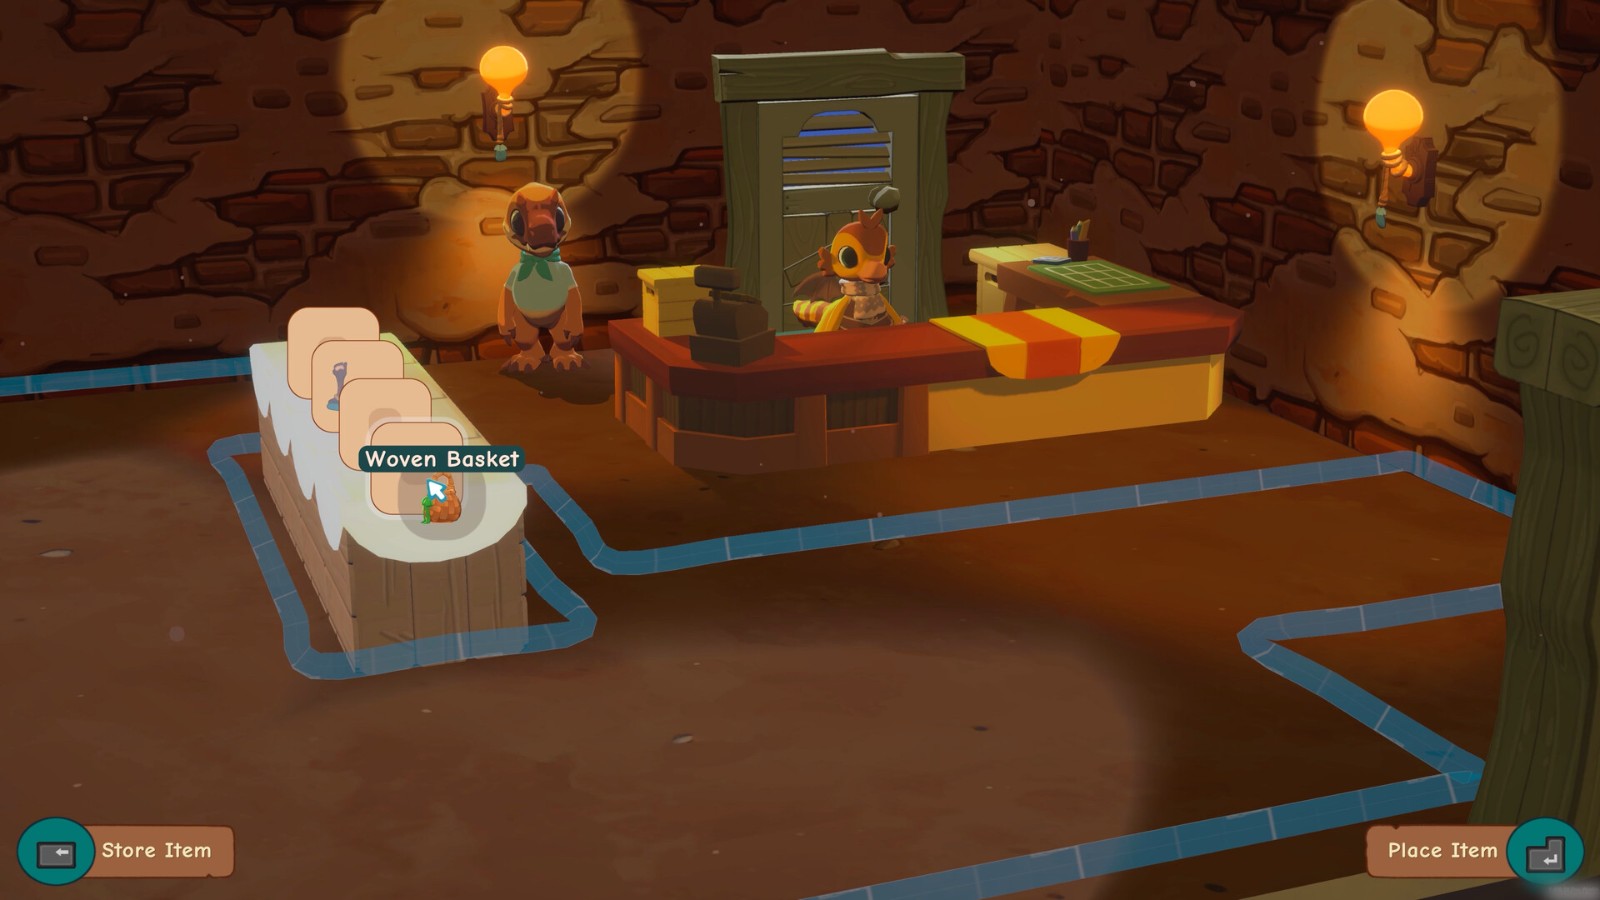 恐龙主题模拟经营游戏《琥珀岛》公布 将登陆Switch和PC